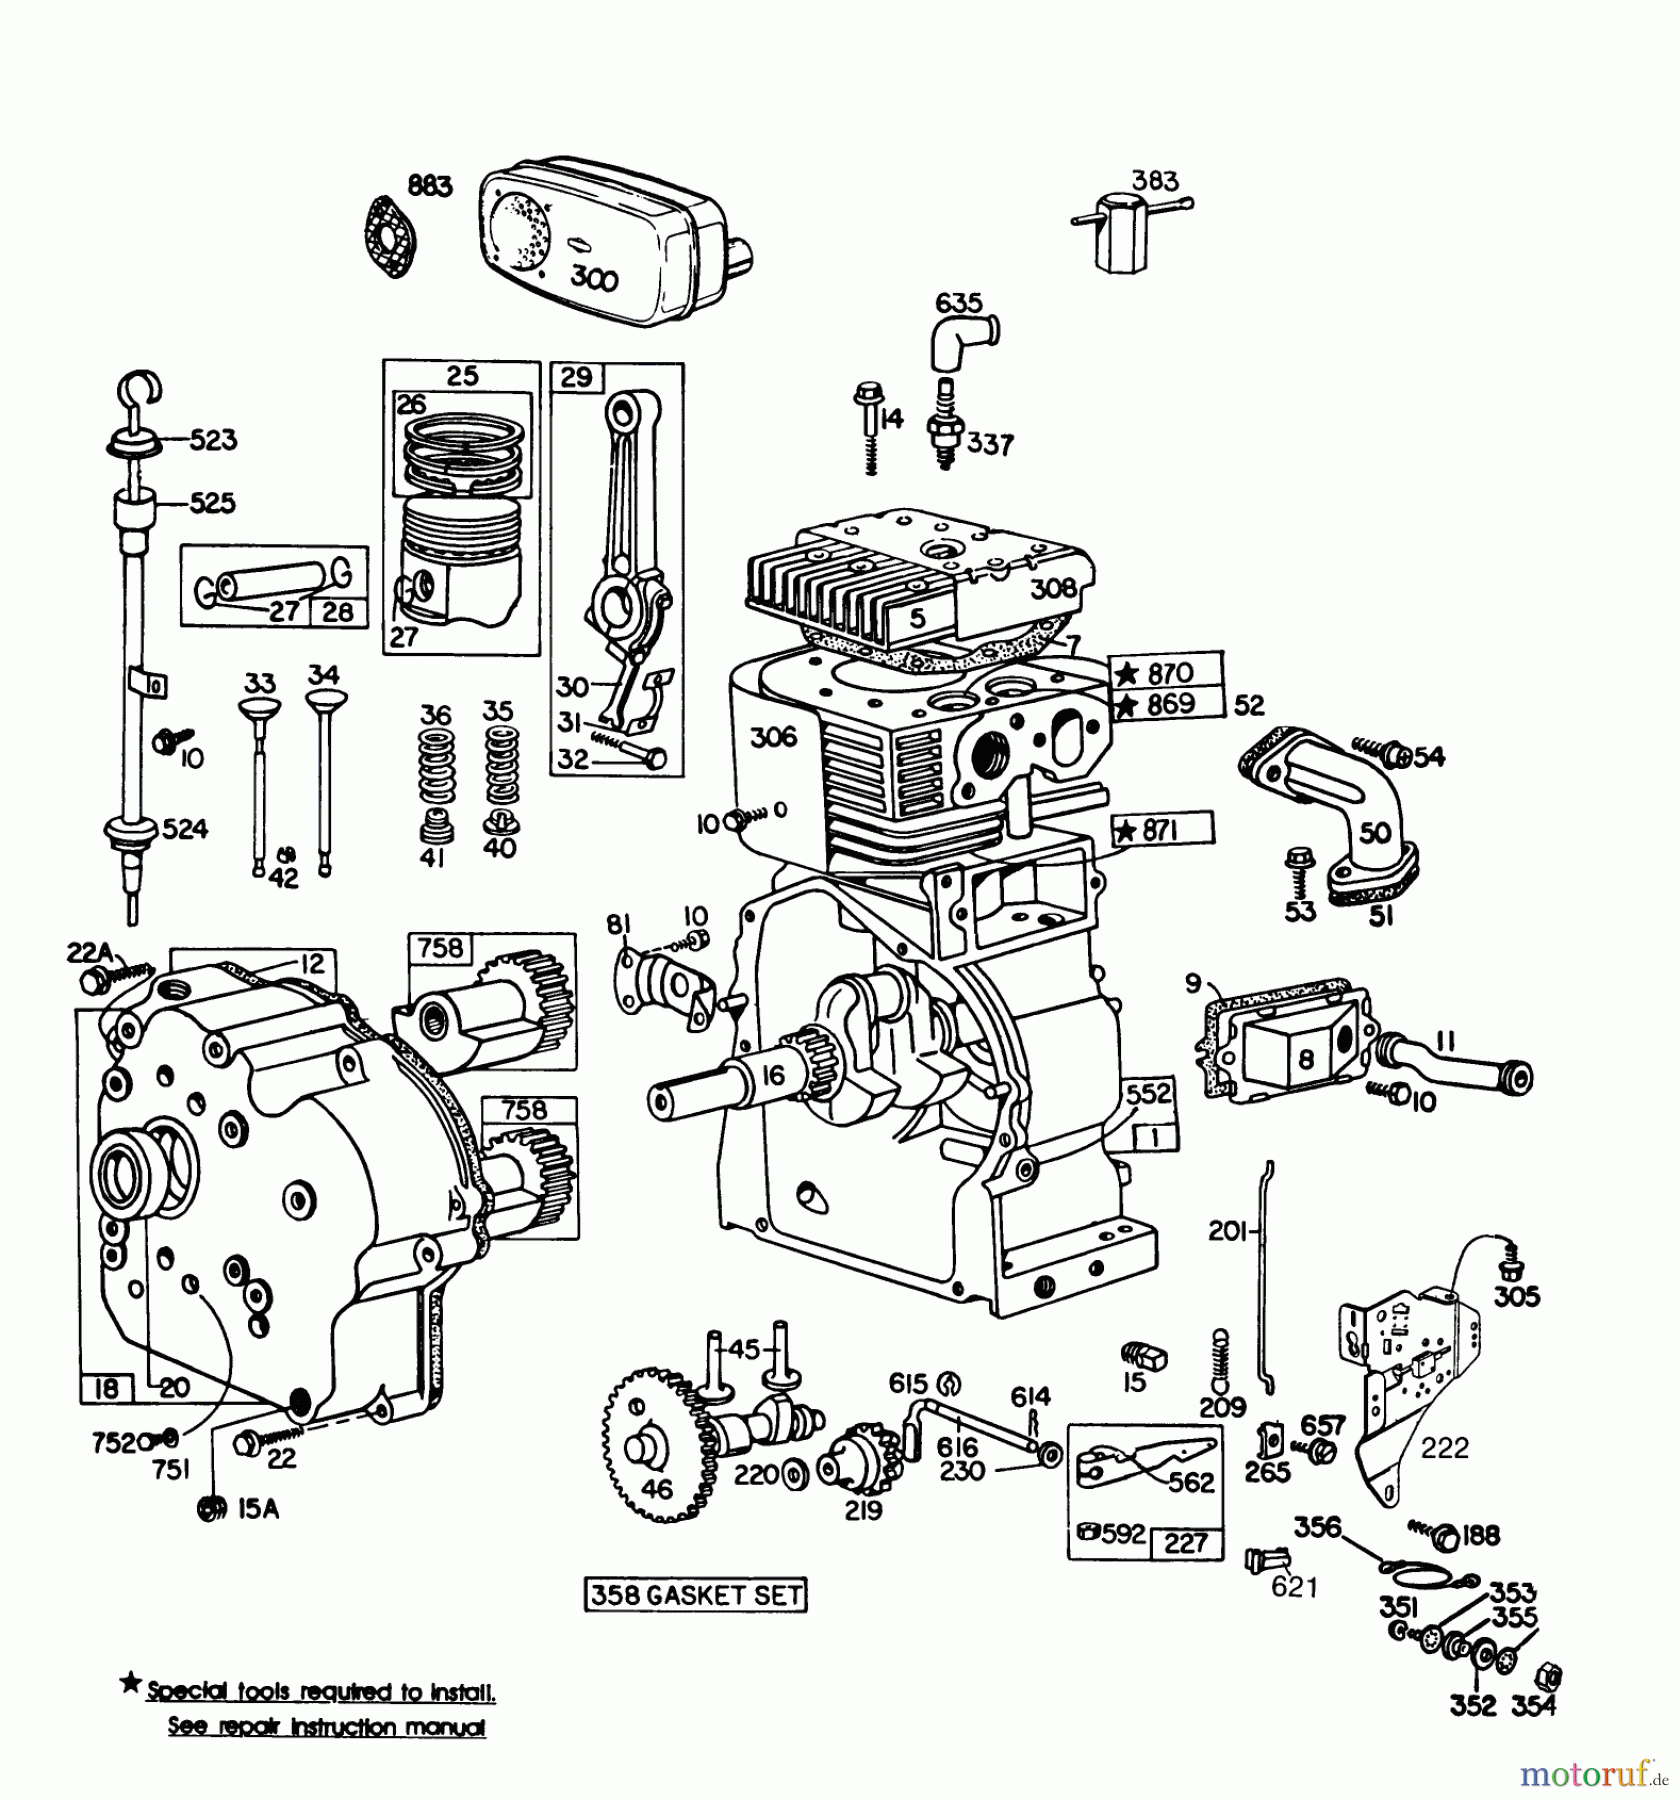  Toro Neu Snow Blowers/Snow Throwers Seite 1 38090 (1132) - Toro 1132 Snowthrower, 1985 (5000001-5999999) ENGINE BRIGGS & STRATTON MODEL NO. 252412-0685-01 #1